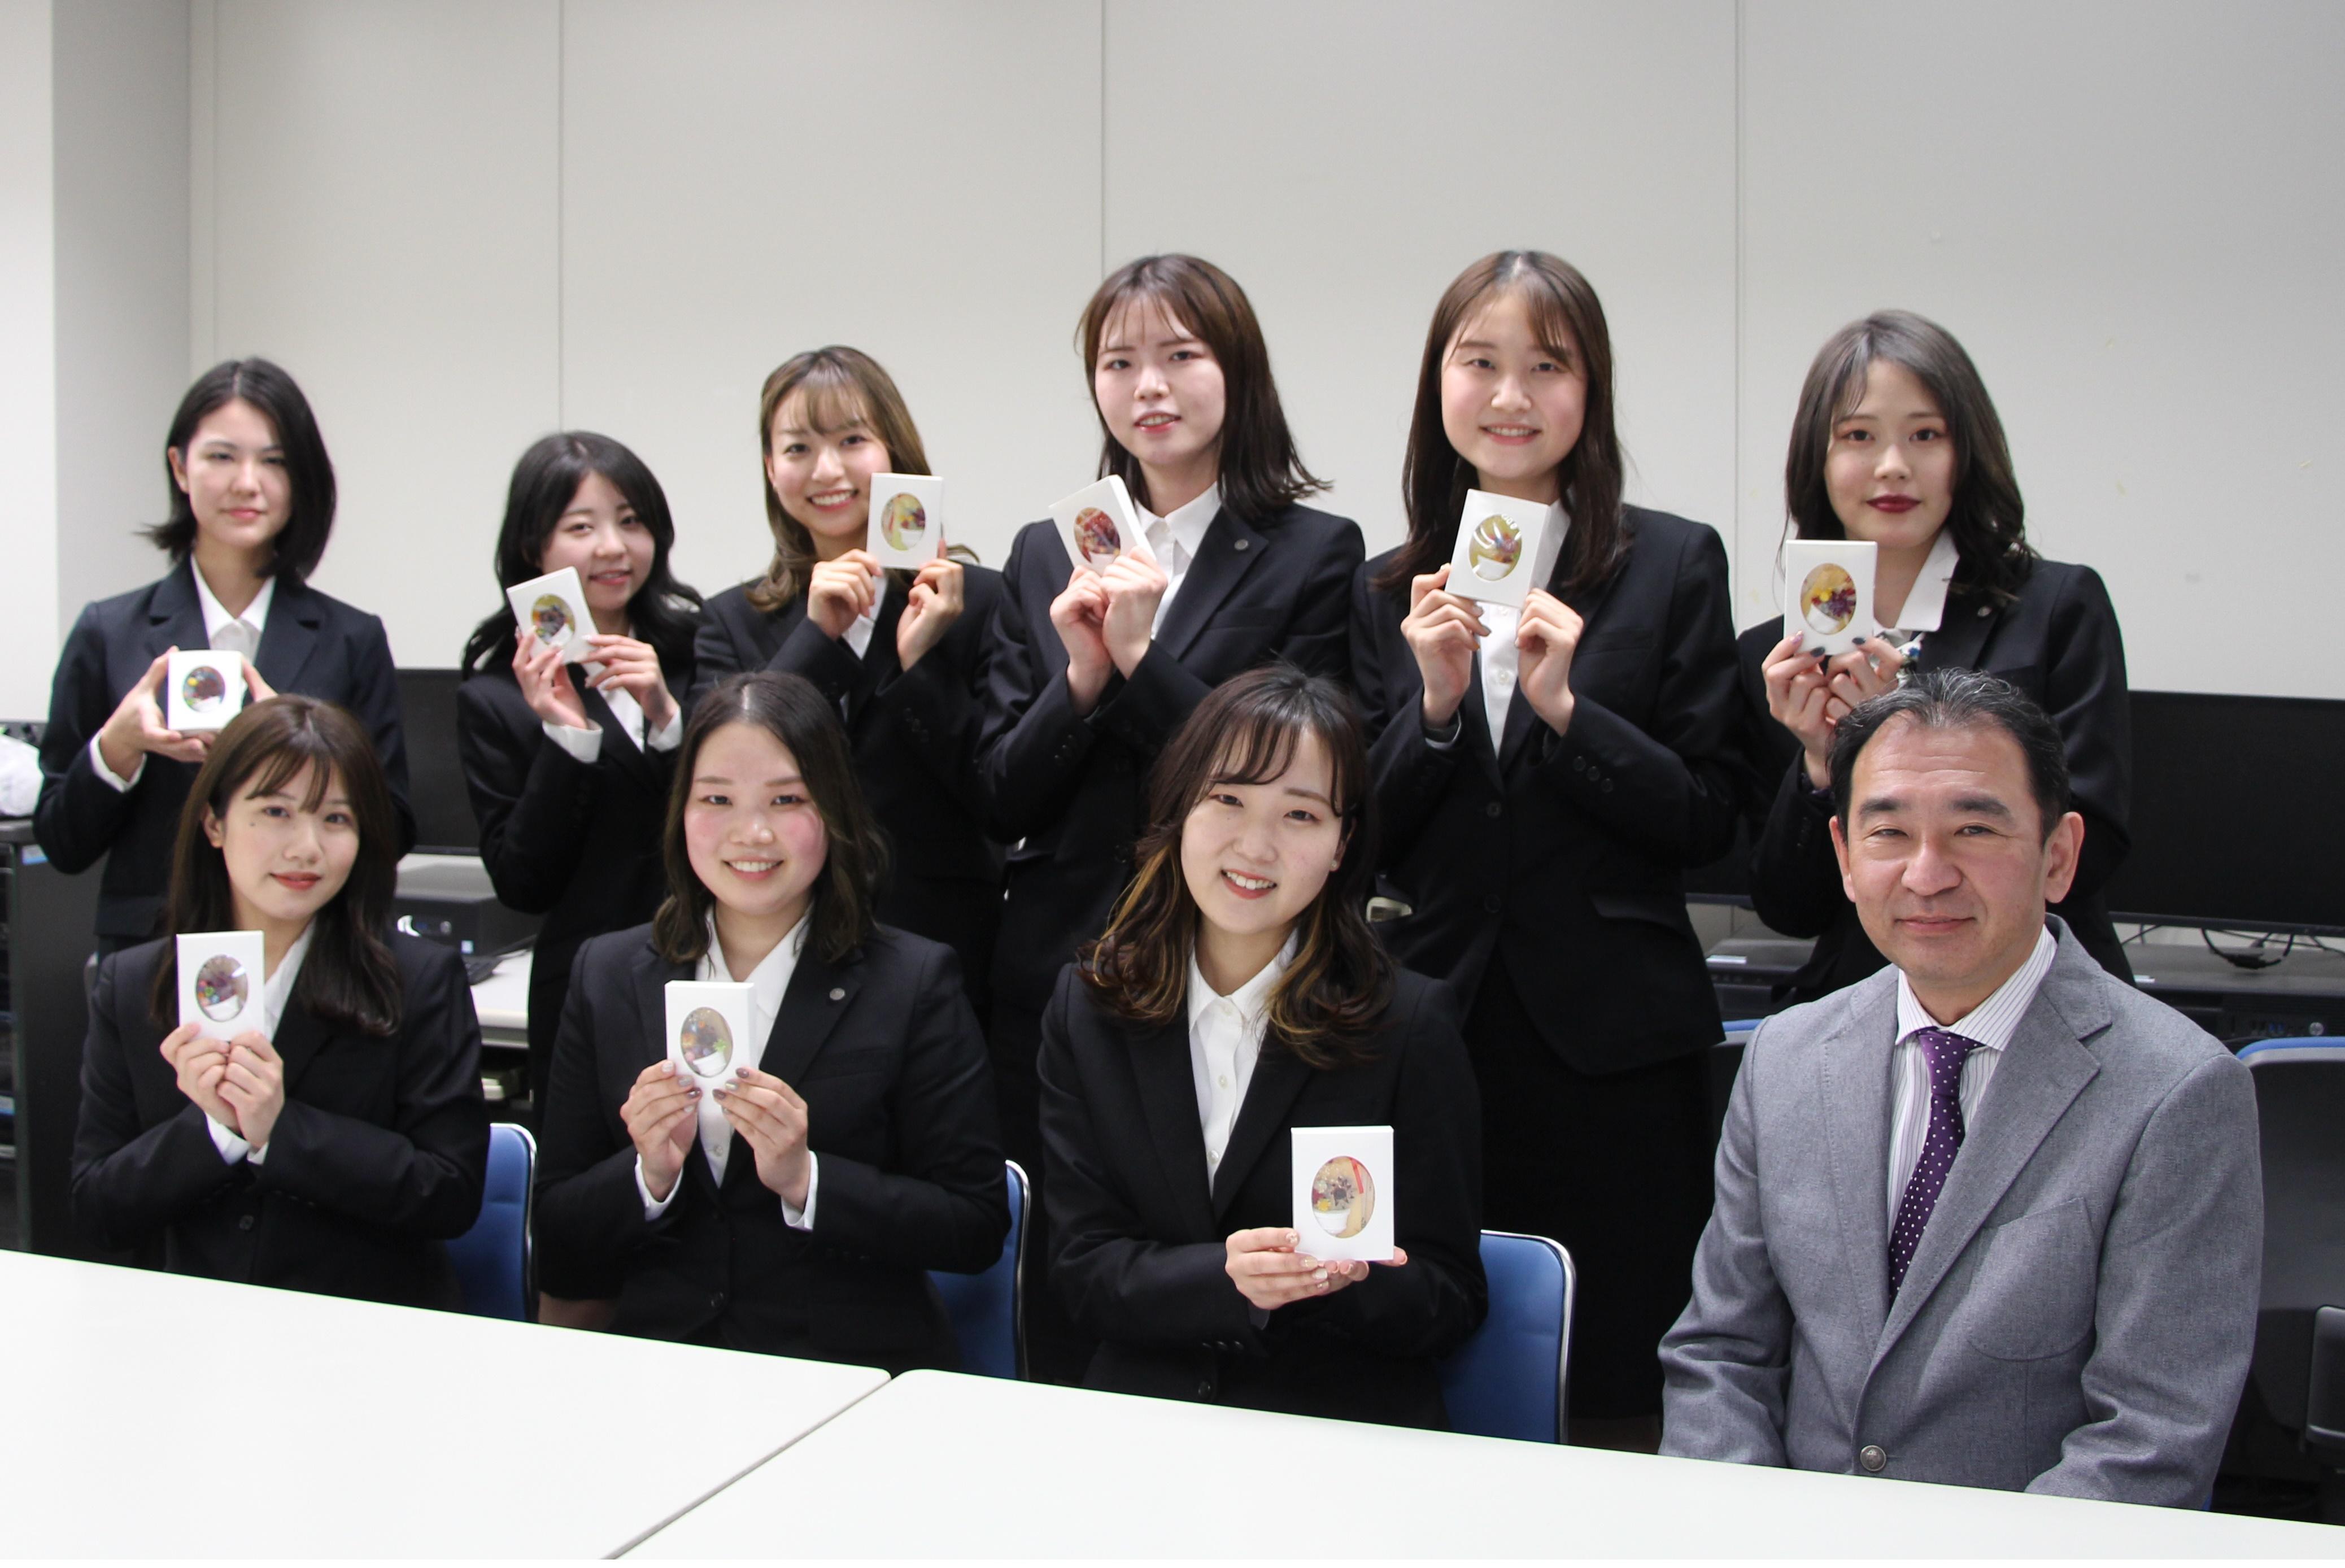 和ろうそくの魅力を発信しよう！と、武庫川女子大学の学生たちが取り組んだ「アロマもくろうバー」が商品化。卒業記念品として卒業生に贈られました。